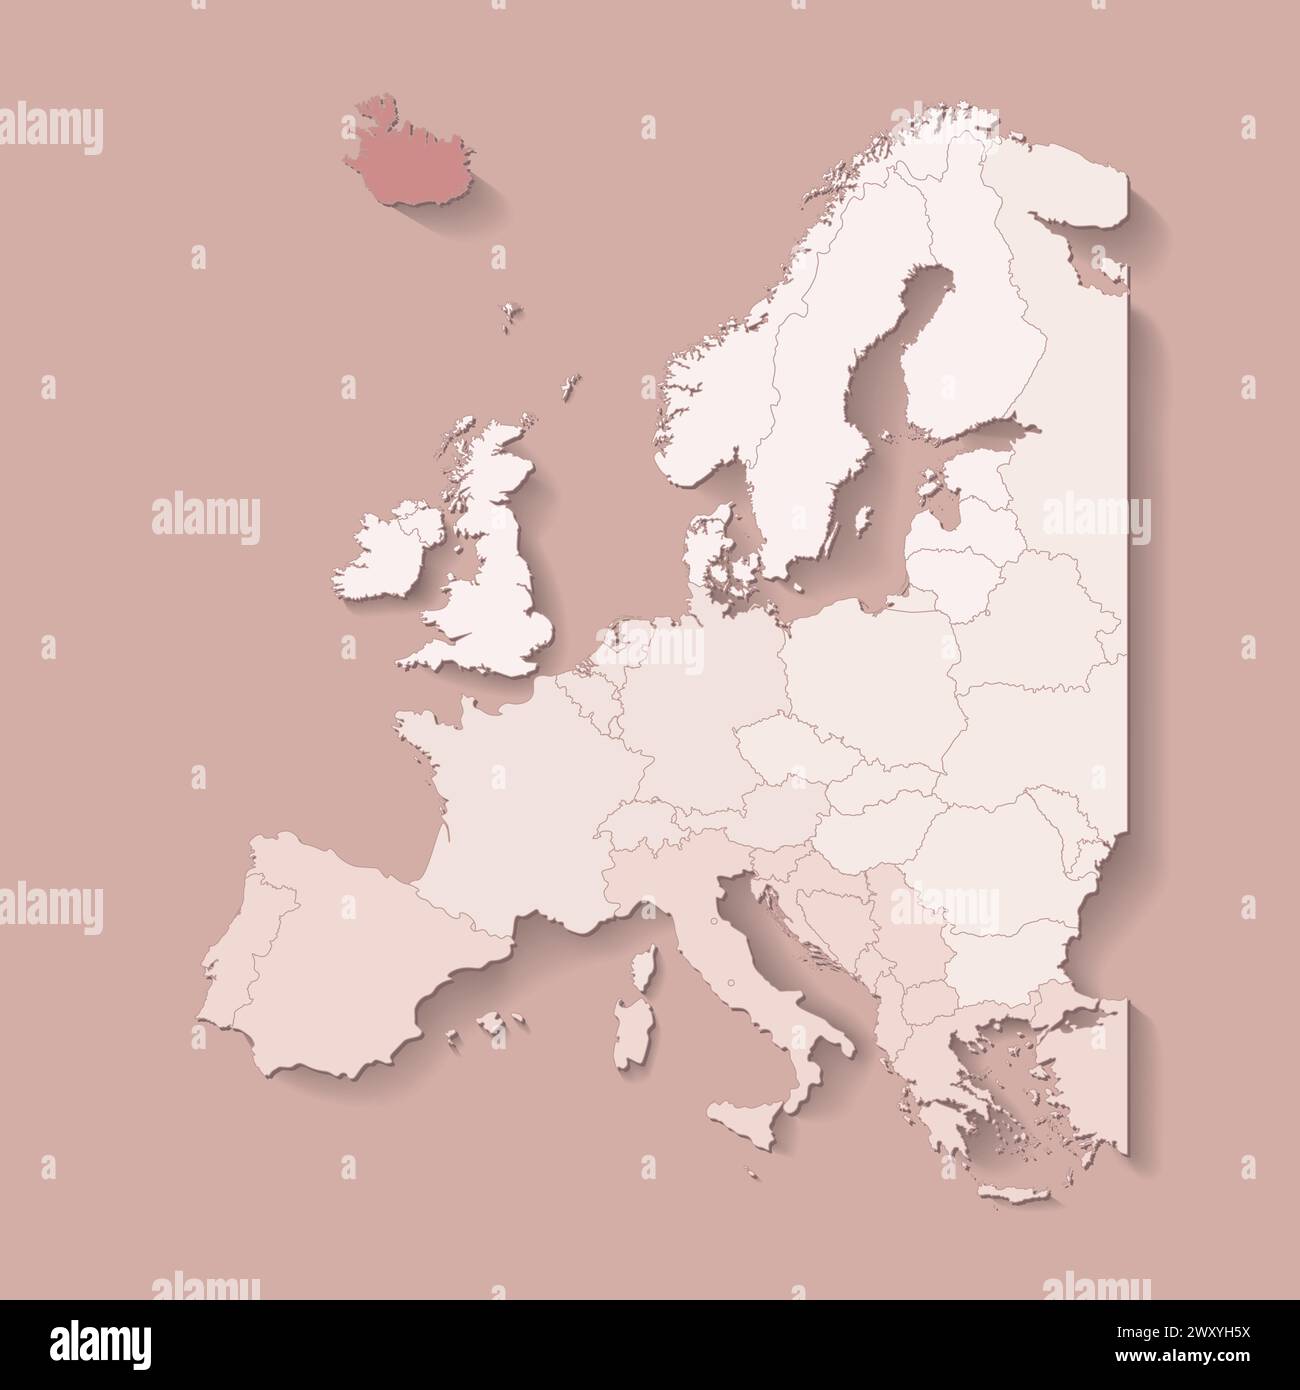 Illustrazione vettoriale con terra europea con confini di stati e paese contrassegnato Islanda. Mappa politica di colore marrone con occidentale, sud e così via Illustrazione Vettoriale